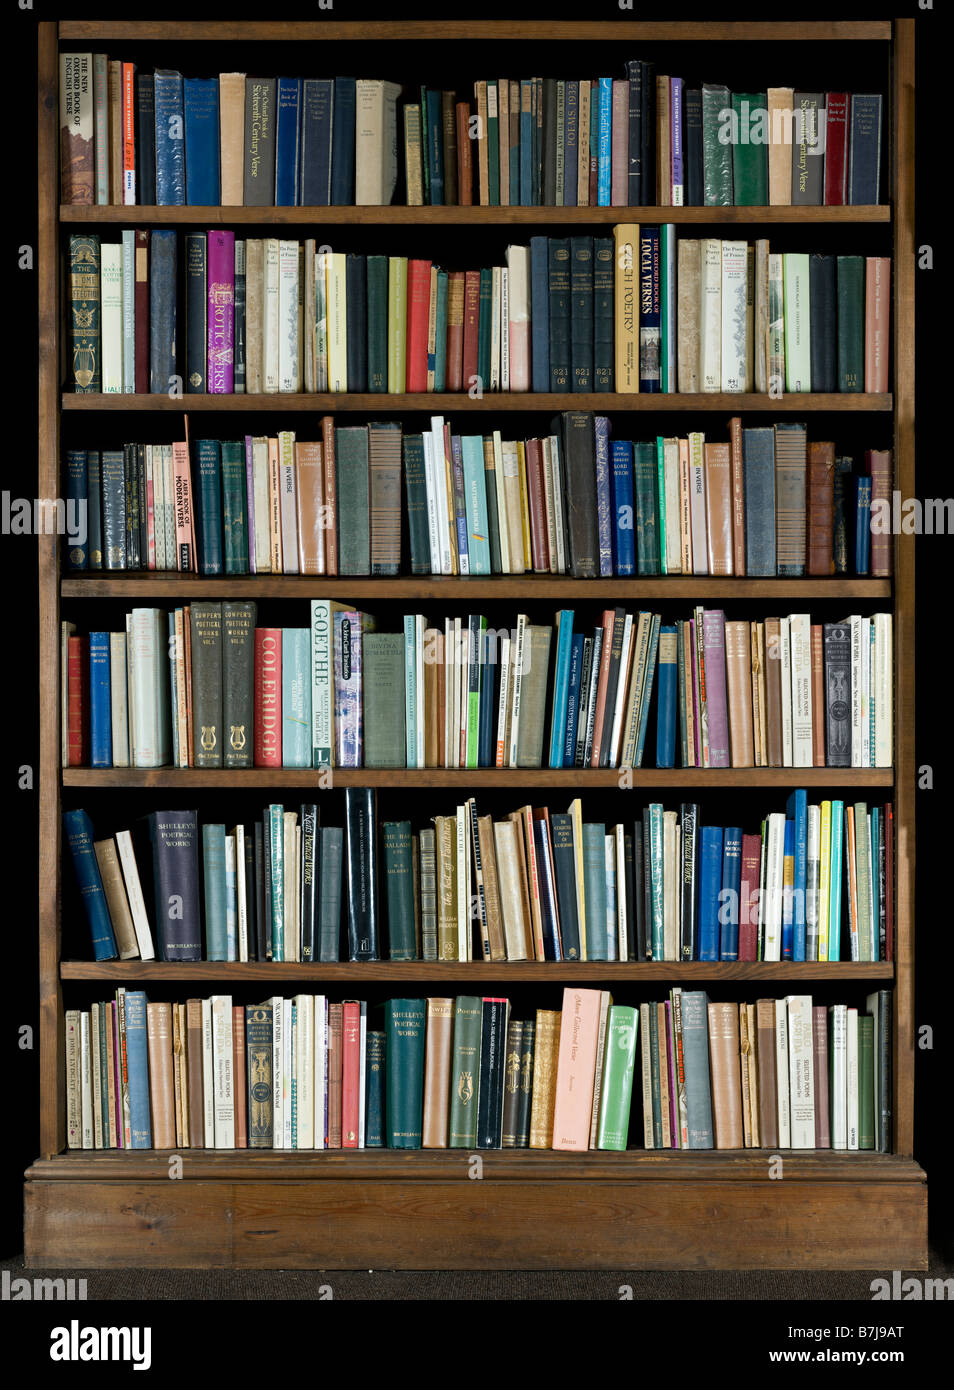 Immagine ad alta risoluzione di libri su uno scaffale su sfondo nero Foto Stock